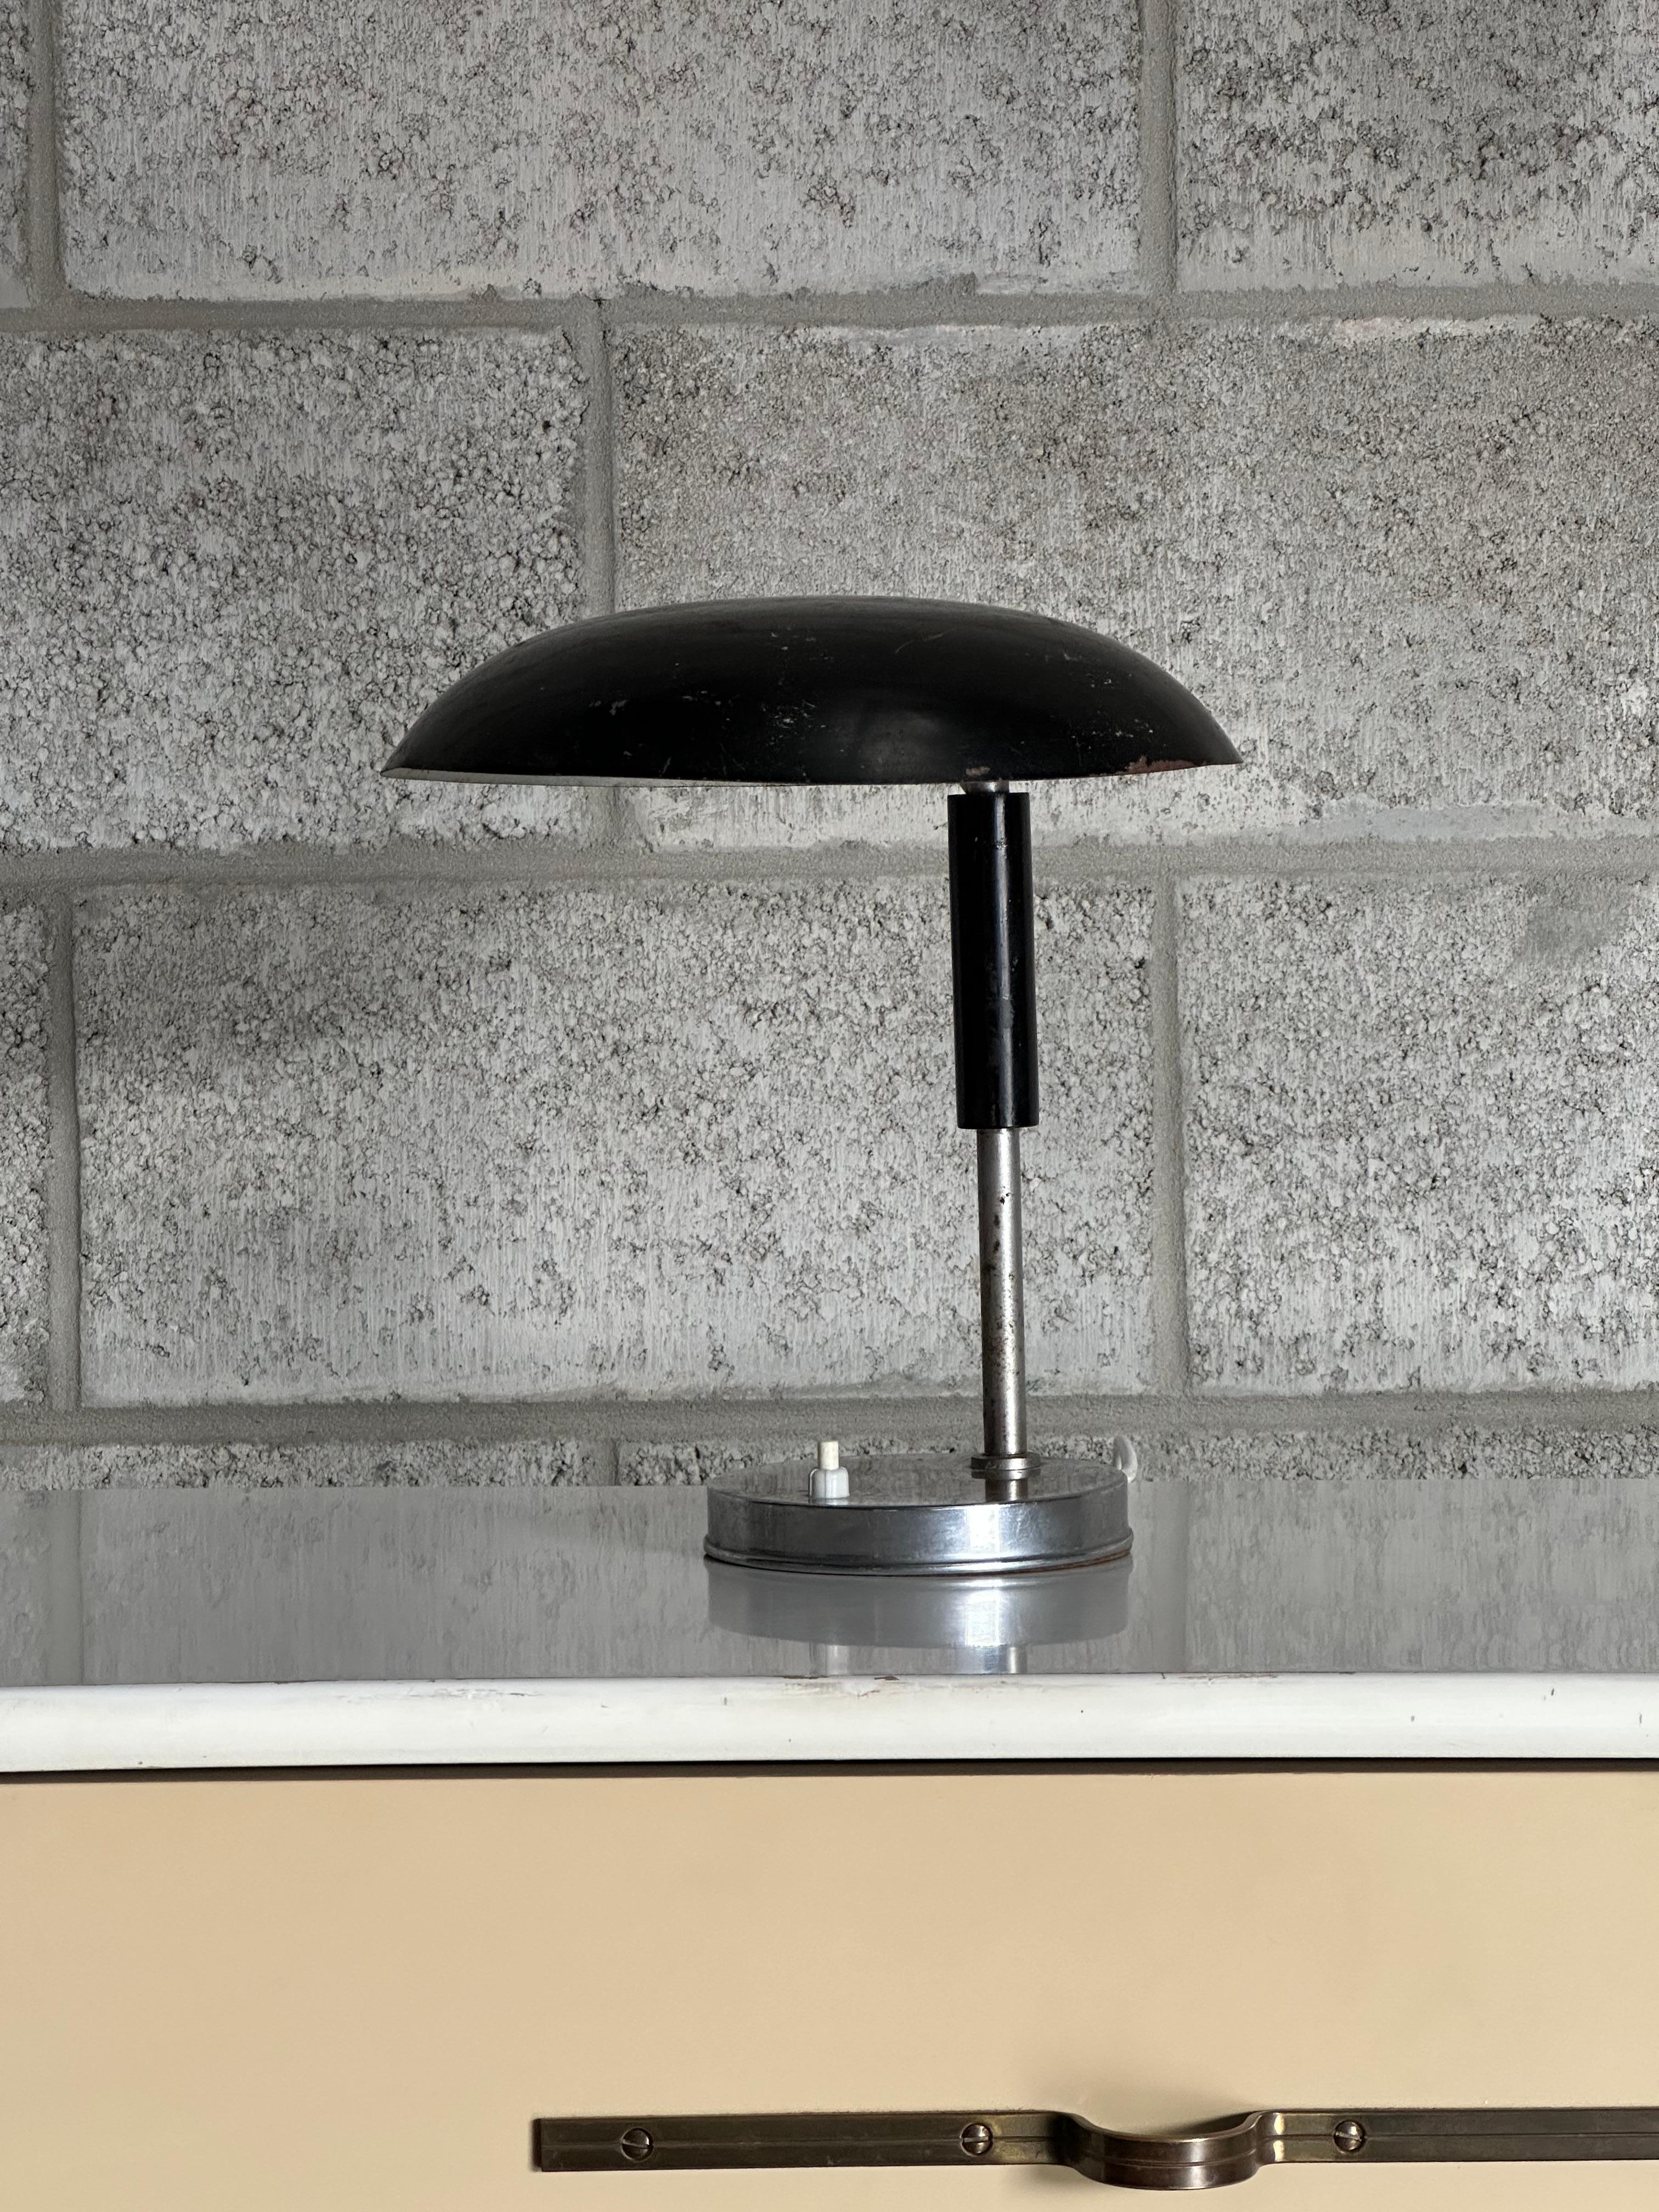 Eine schöne schwedische Lampe aus den 1940er Jahren, ganz im Stil des Bauhauses. Großartige Form und minimalistisches Design bei gleichzeitiger Funktionalität. Die Lampe wird Harald Notini zugeschrieben.